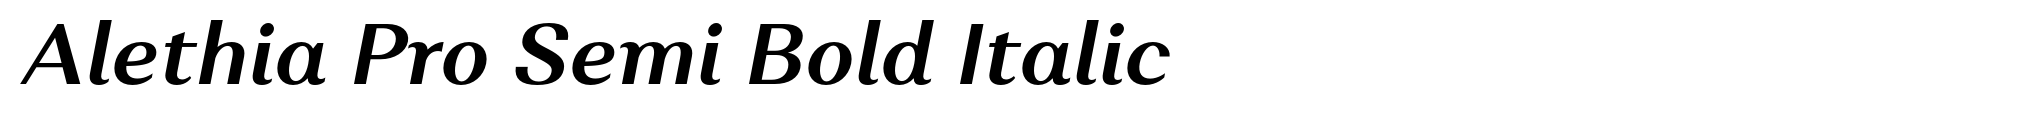 Alethia Pro Semi Bold Italic image